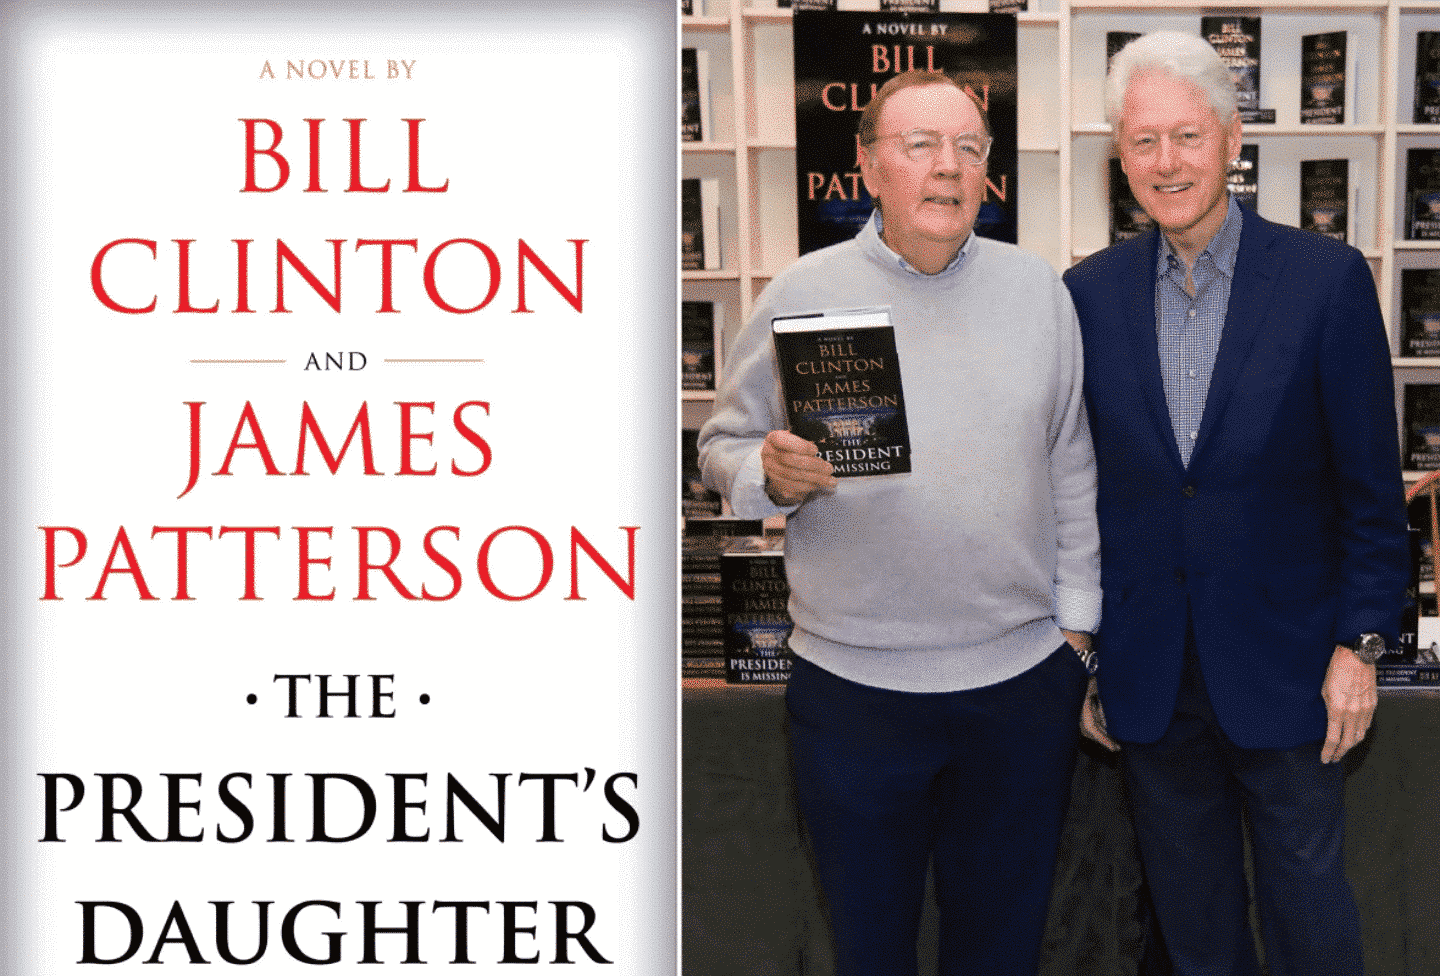 يعمل بيل كلينتون وجيمس باترسون على كتاب جديد 15